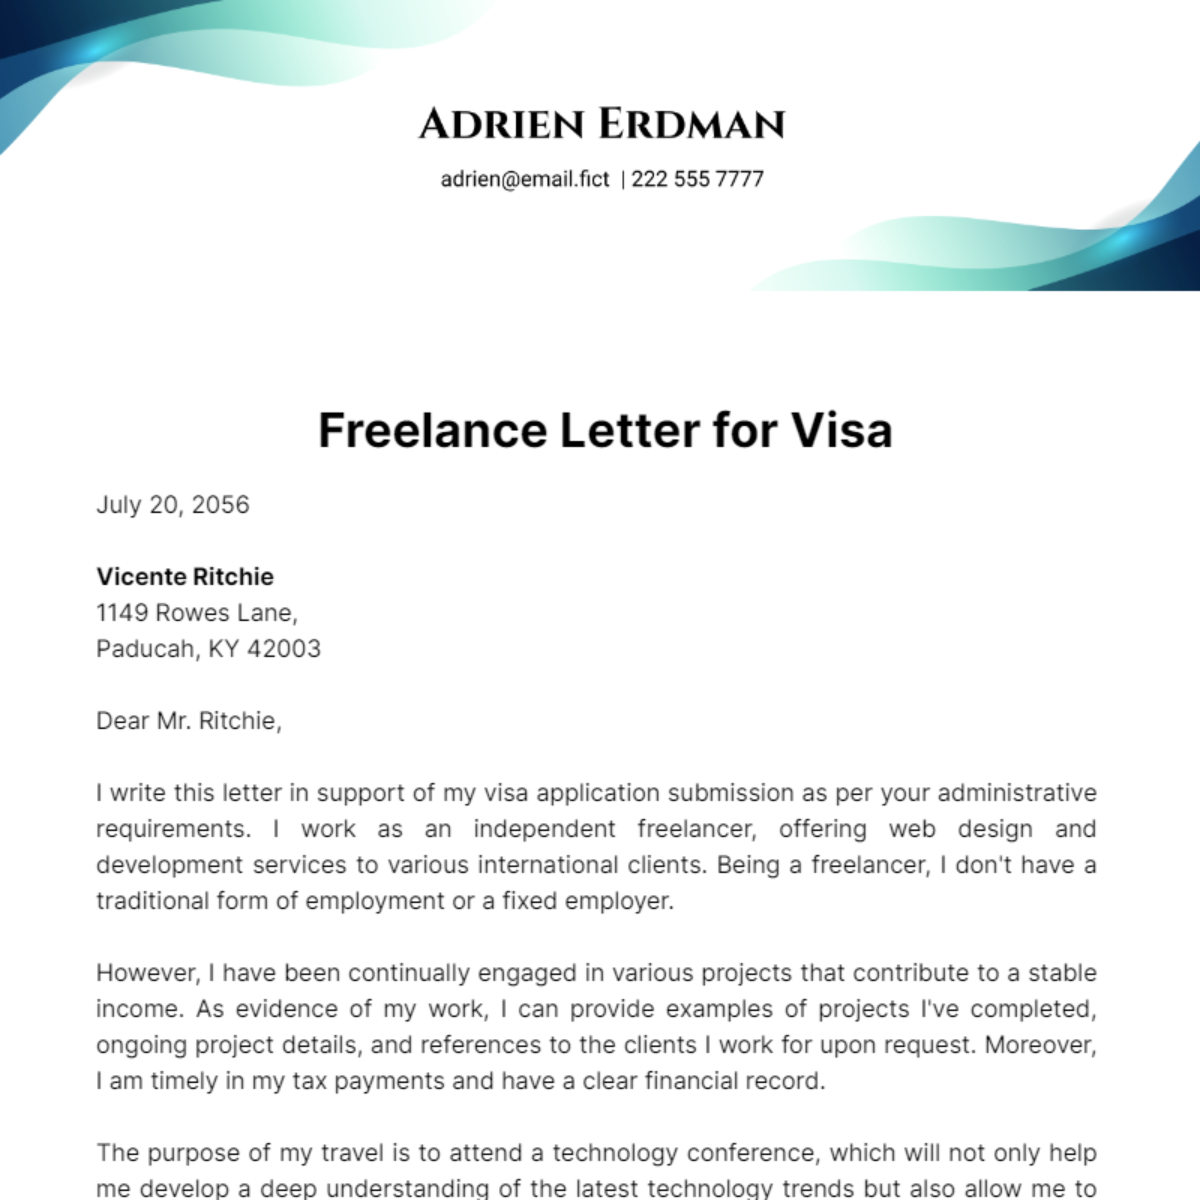 Freelance Letter for Visa Template